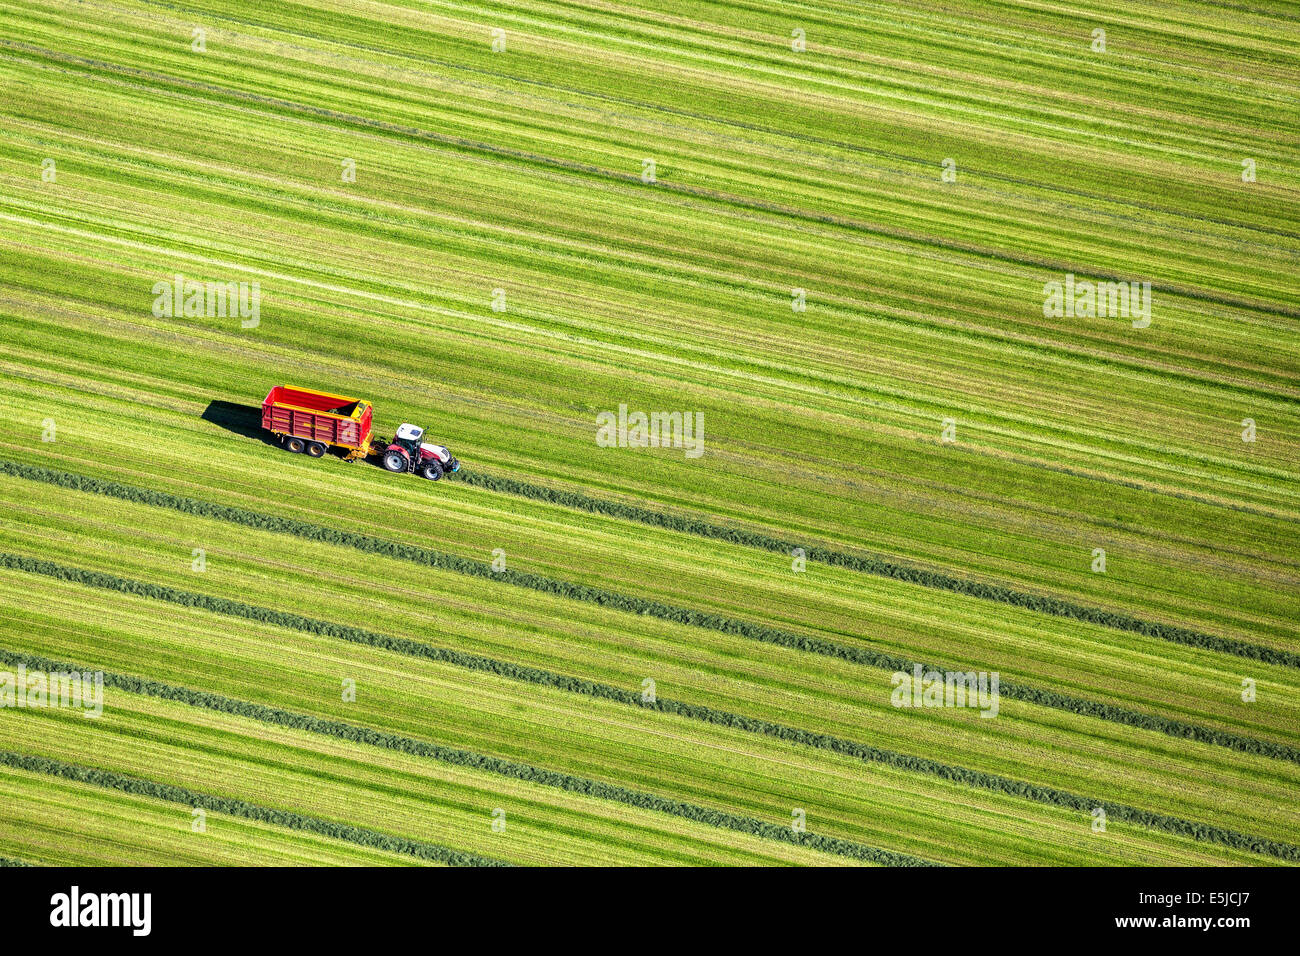 Der Niederlande, in der Nähe von Lelystad, Landwirt Grass mit Traktor in Grünland zu sammeln. Luftbild Stockfoto